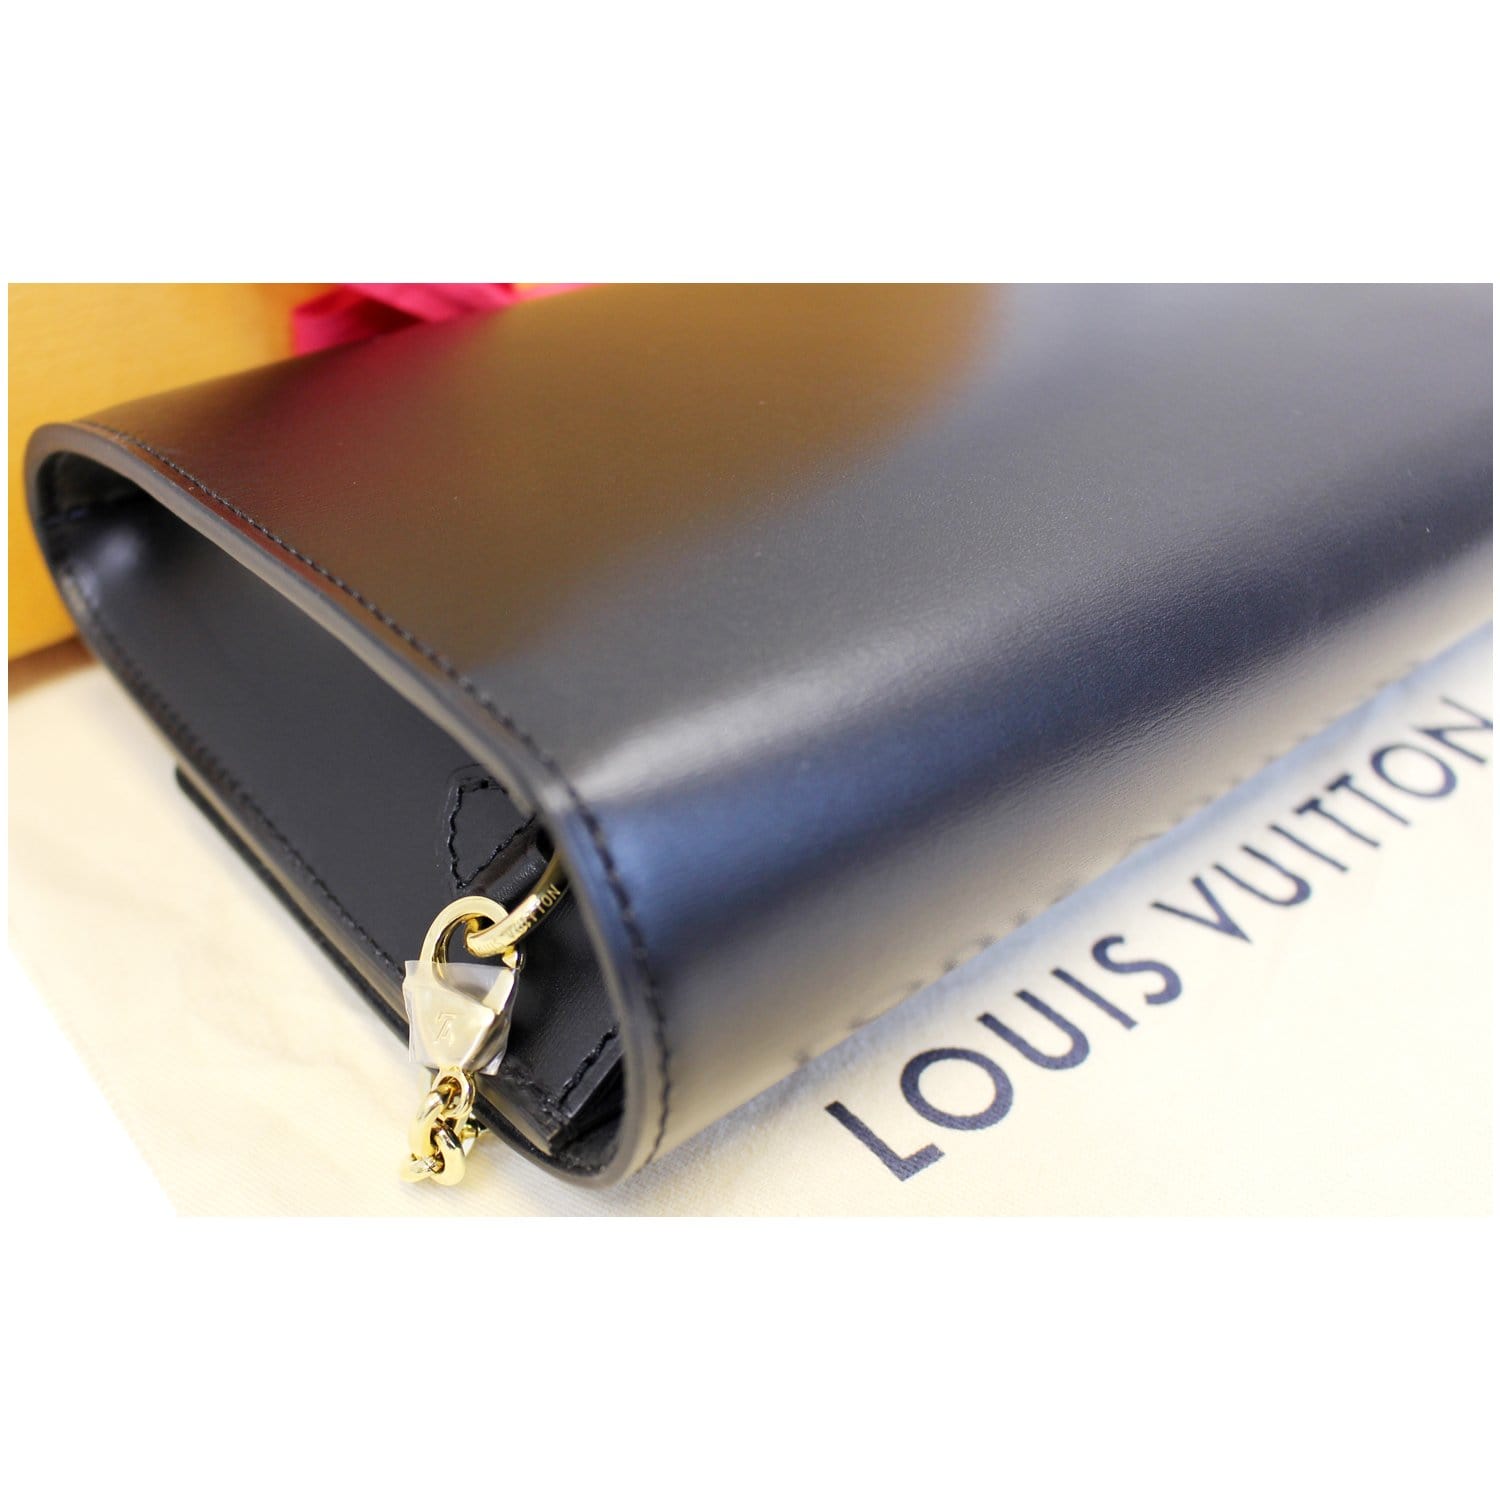 Louis Vuitton Louise Bag Details